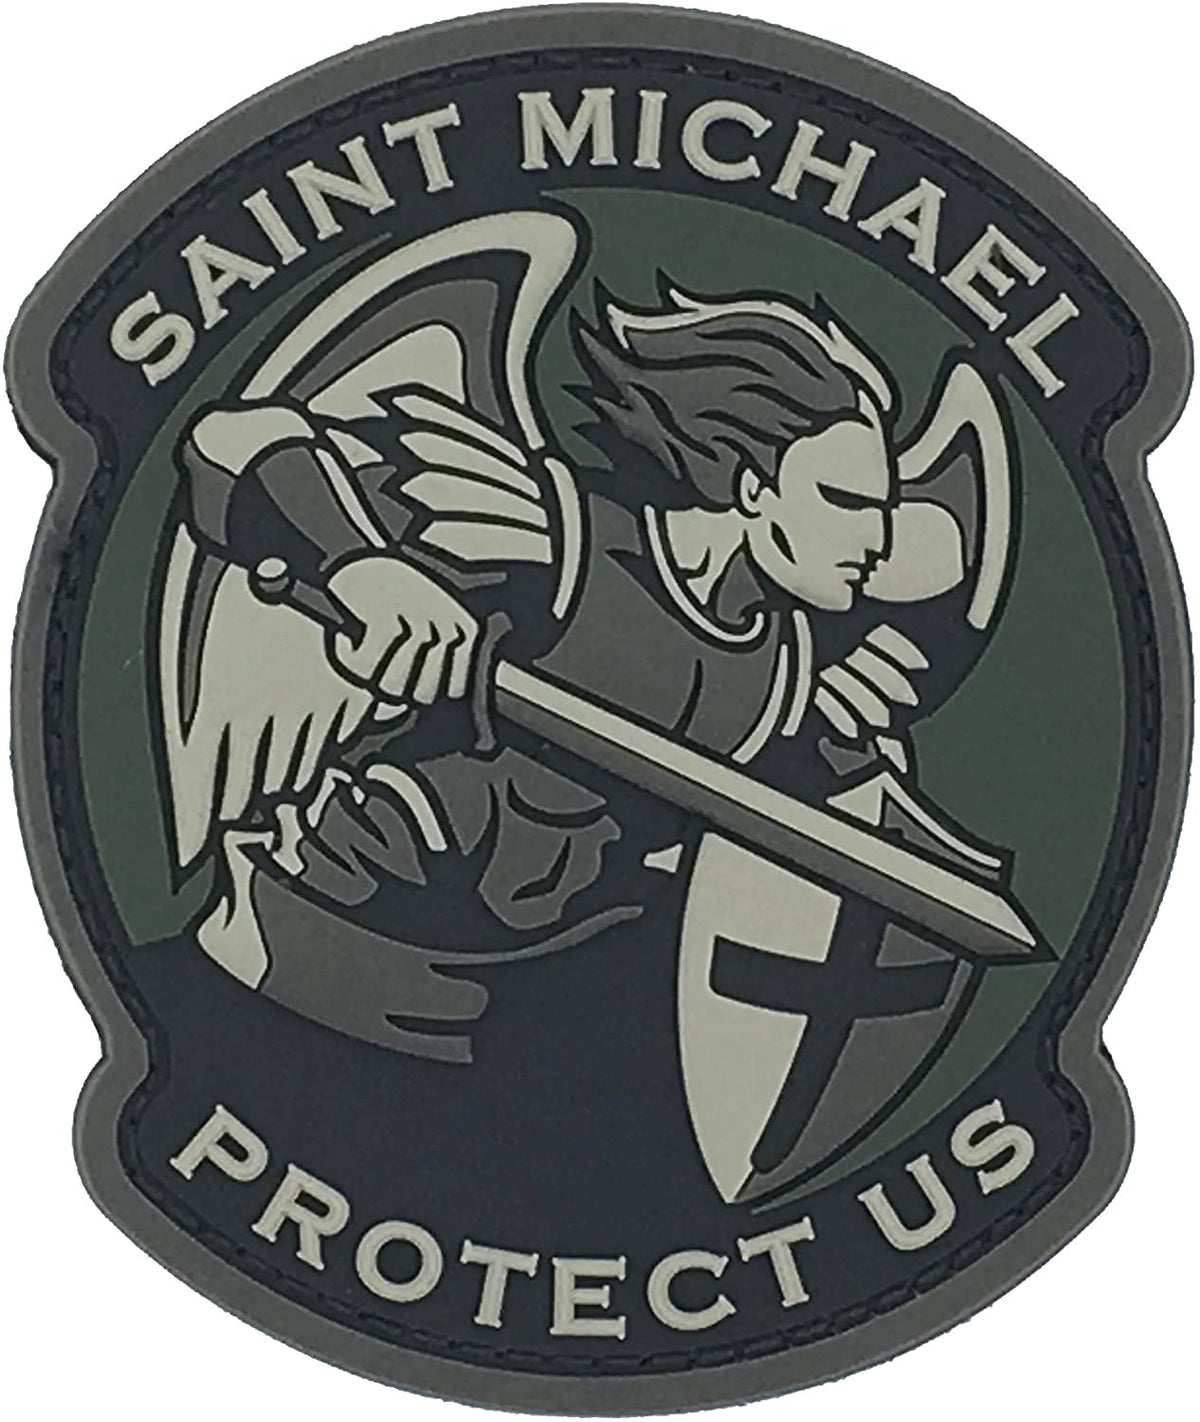 Saint Michael Protect Us Patch - St. Michael Circle Emblem Patch